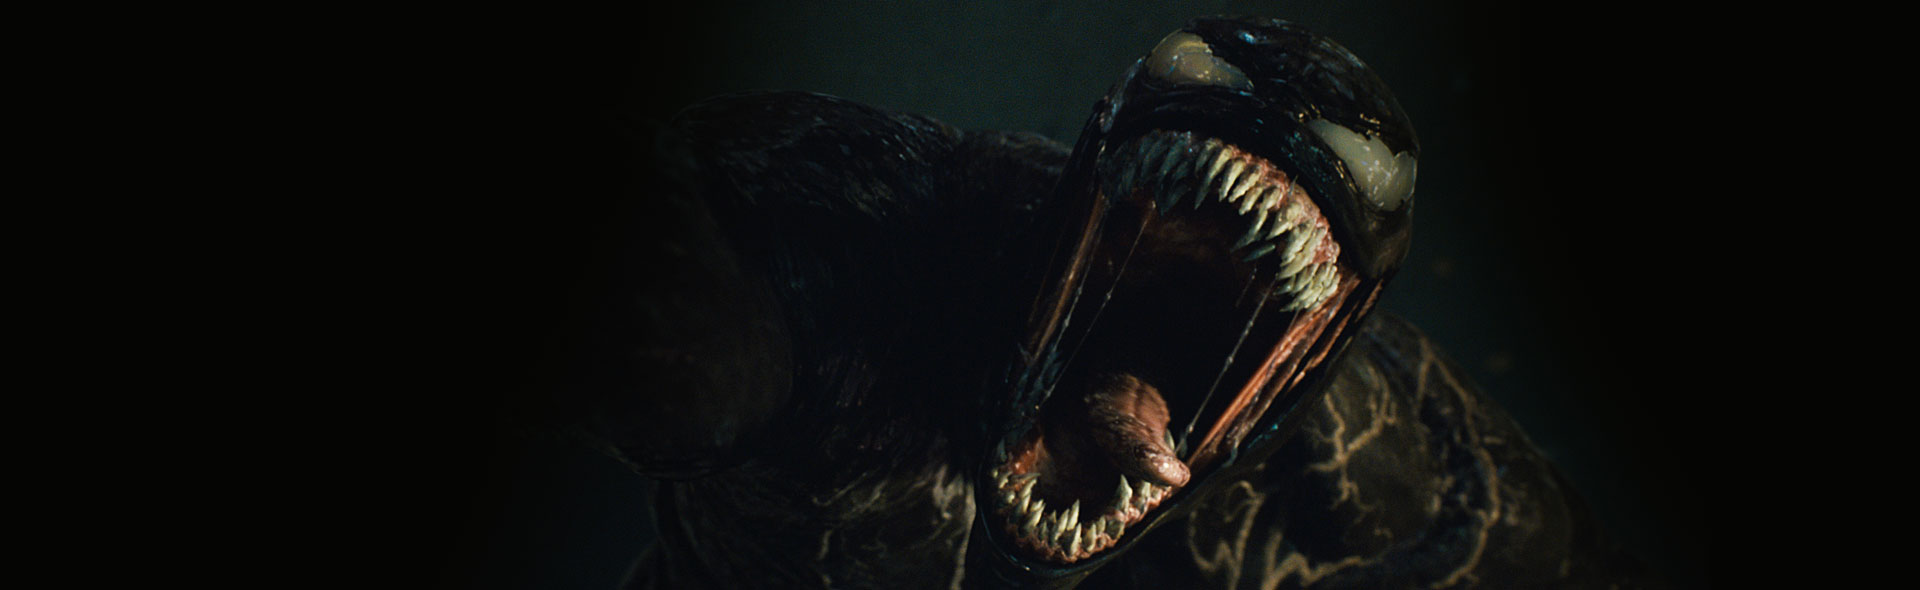 Savant Phobia Opmærksomhed Venom: Let There Be Carnage | Lido Biograferne